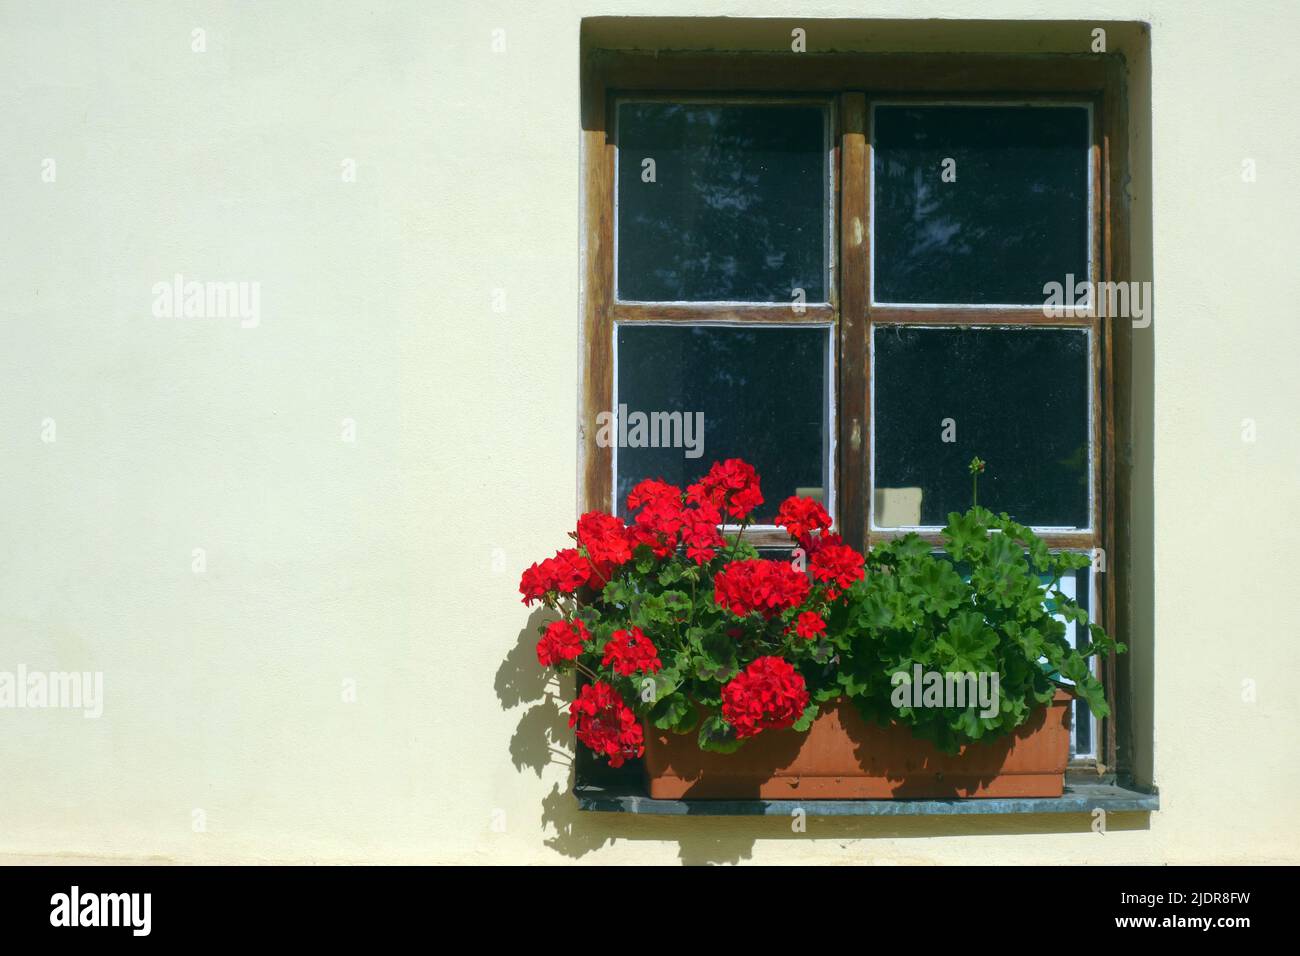 ventana con jarrón de flores rojas y espacio de copiado Foto de stock